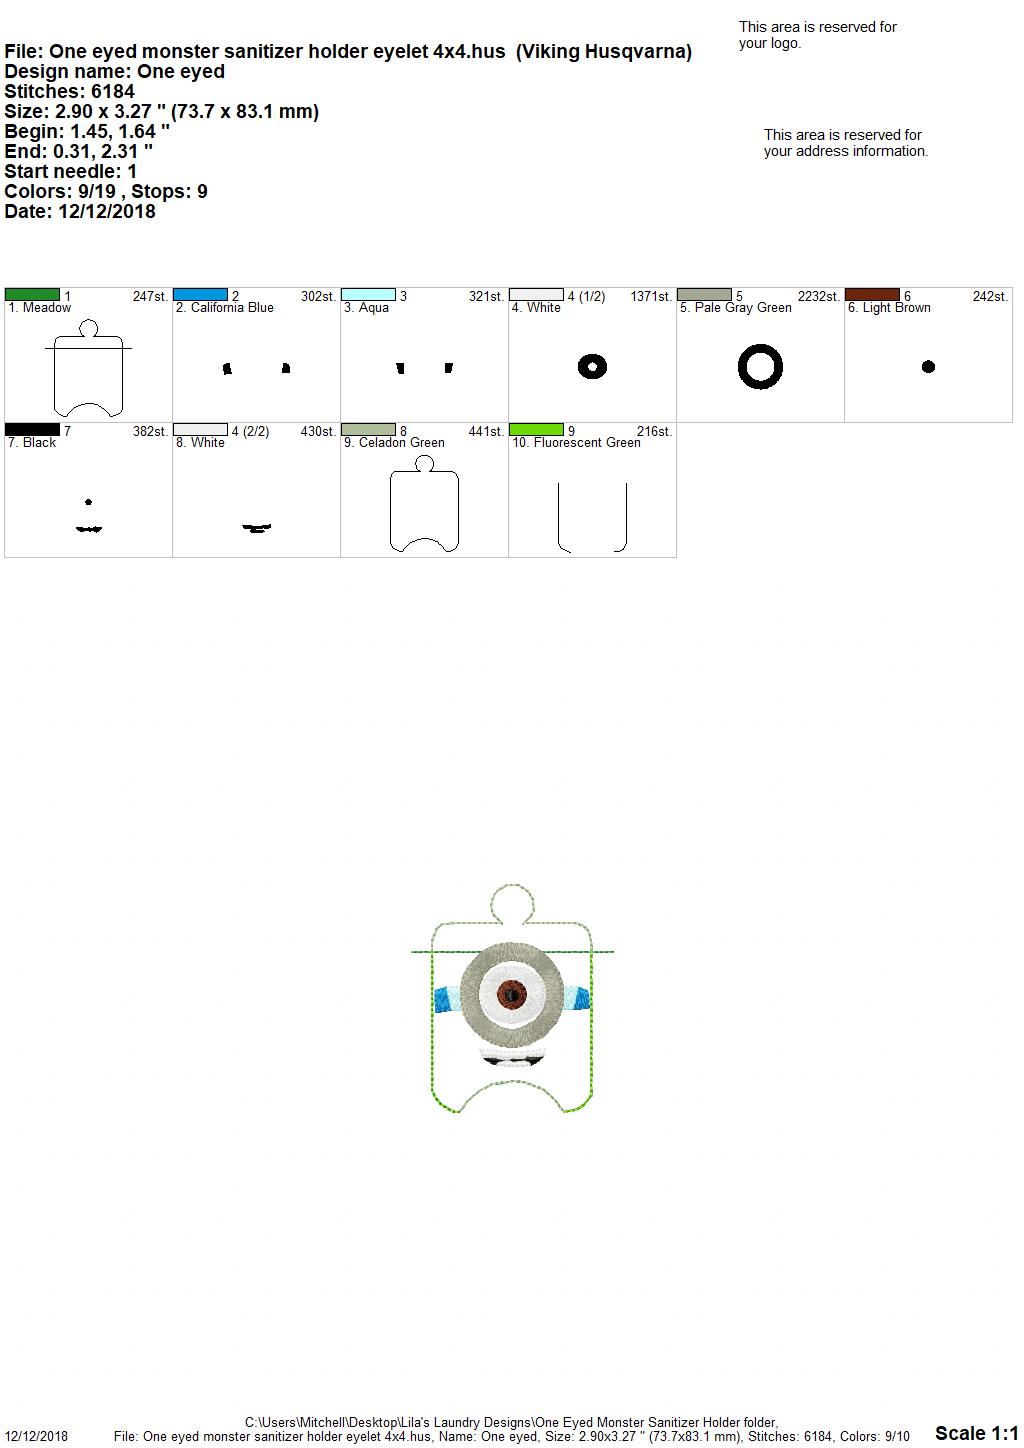 One Eyed Monster Sanitizer Holder - Embroidery Design - DIGITAL Embroidery DESIGN